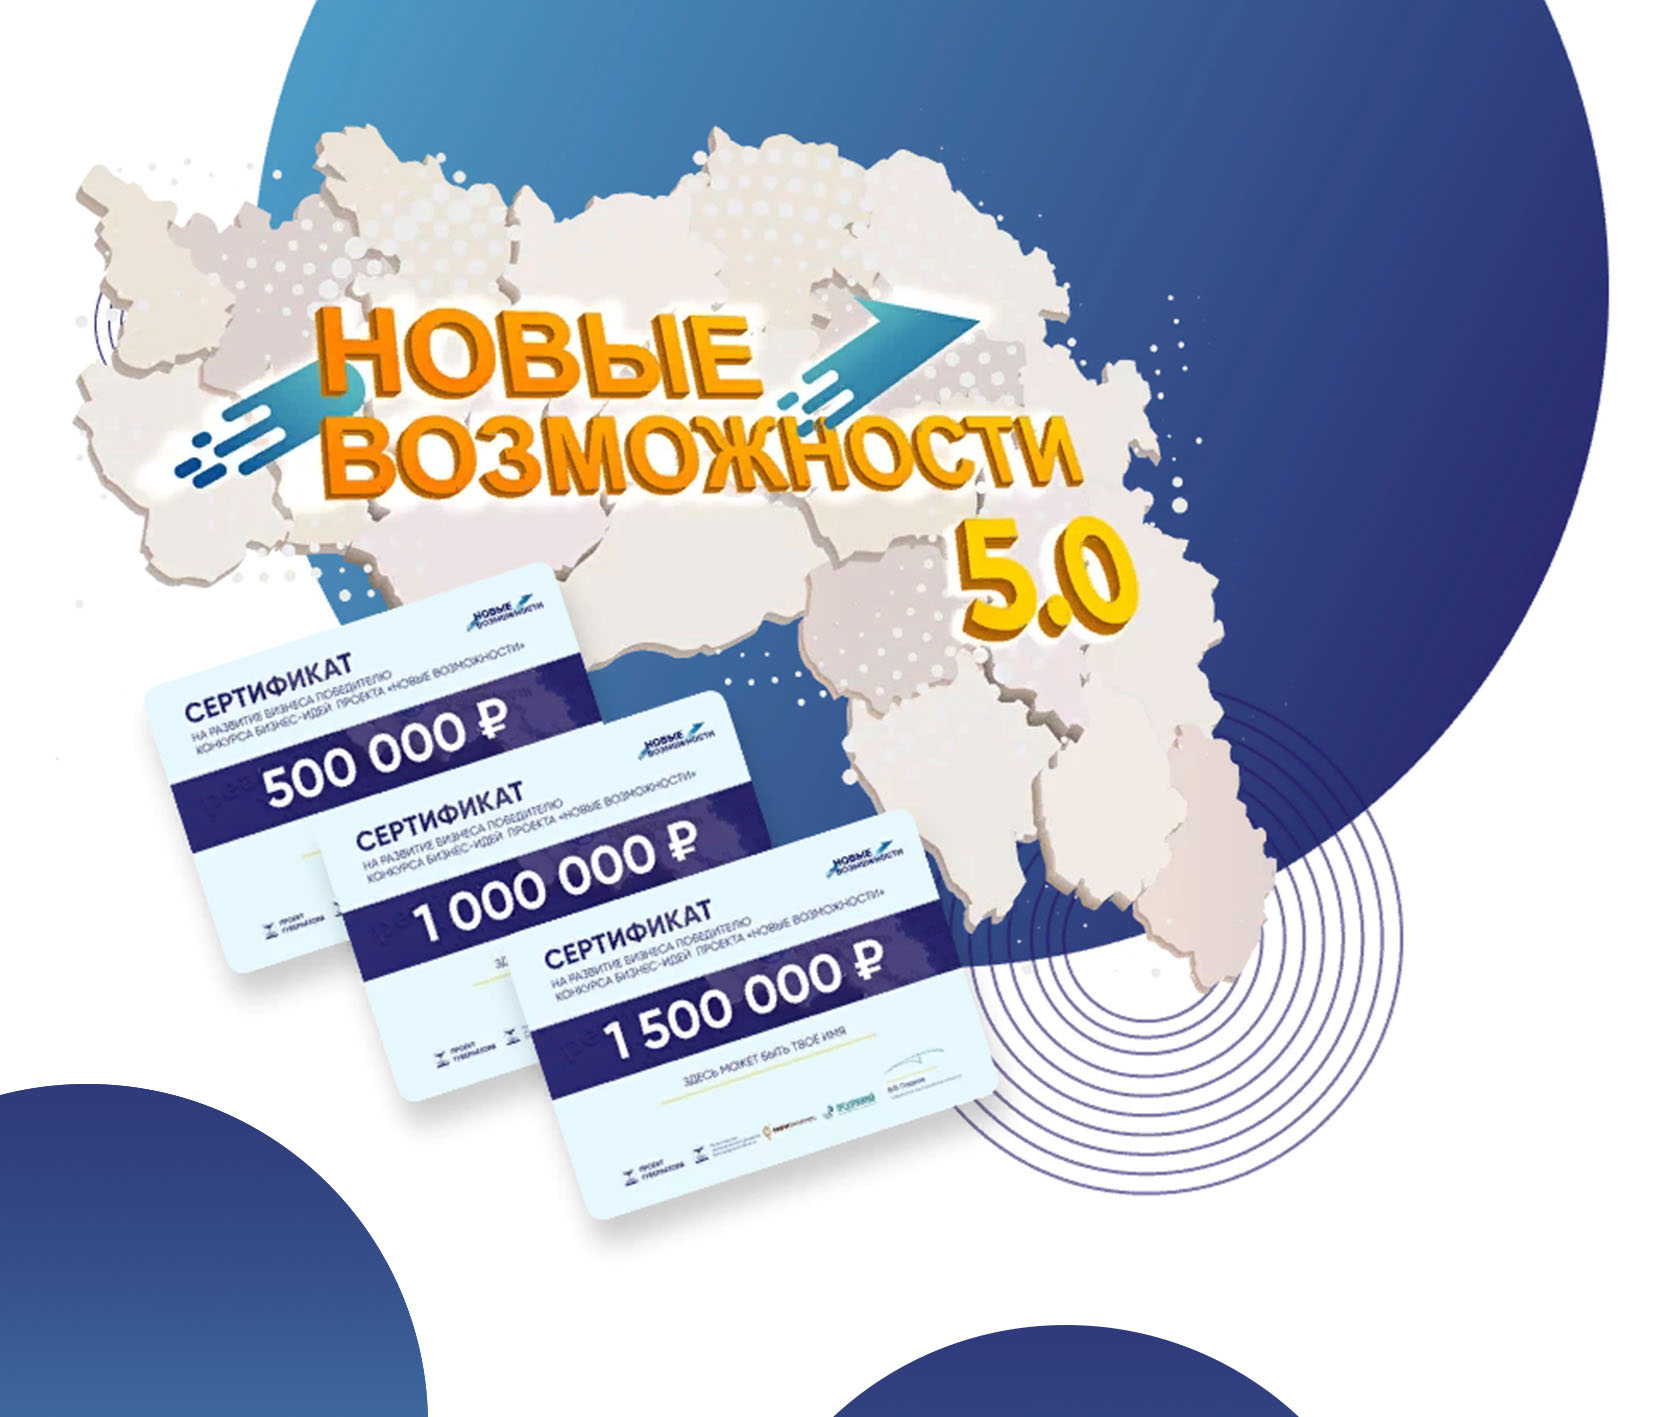 В Белгородской области стартовал проект «Новые возможности 5.0» для начинающих предпринимателей.